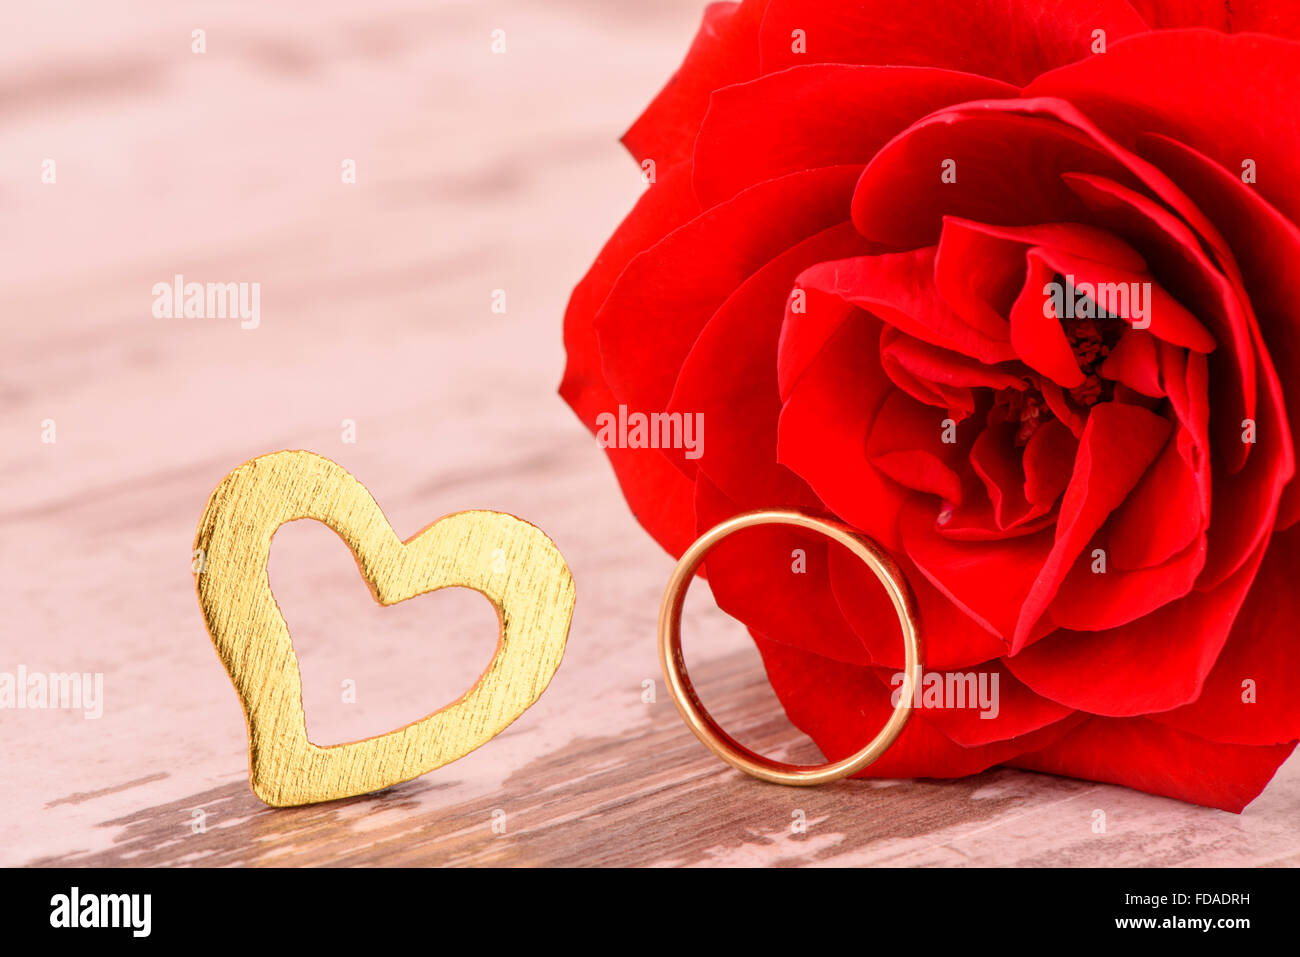 Rosa roja en el amor, para celebrar el Día de San Valentín, cumpleaños y el día de la madre Foto de stock